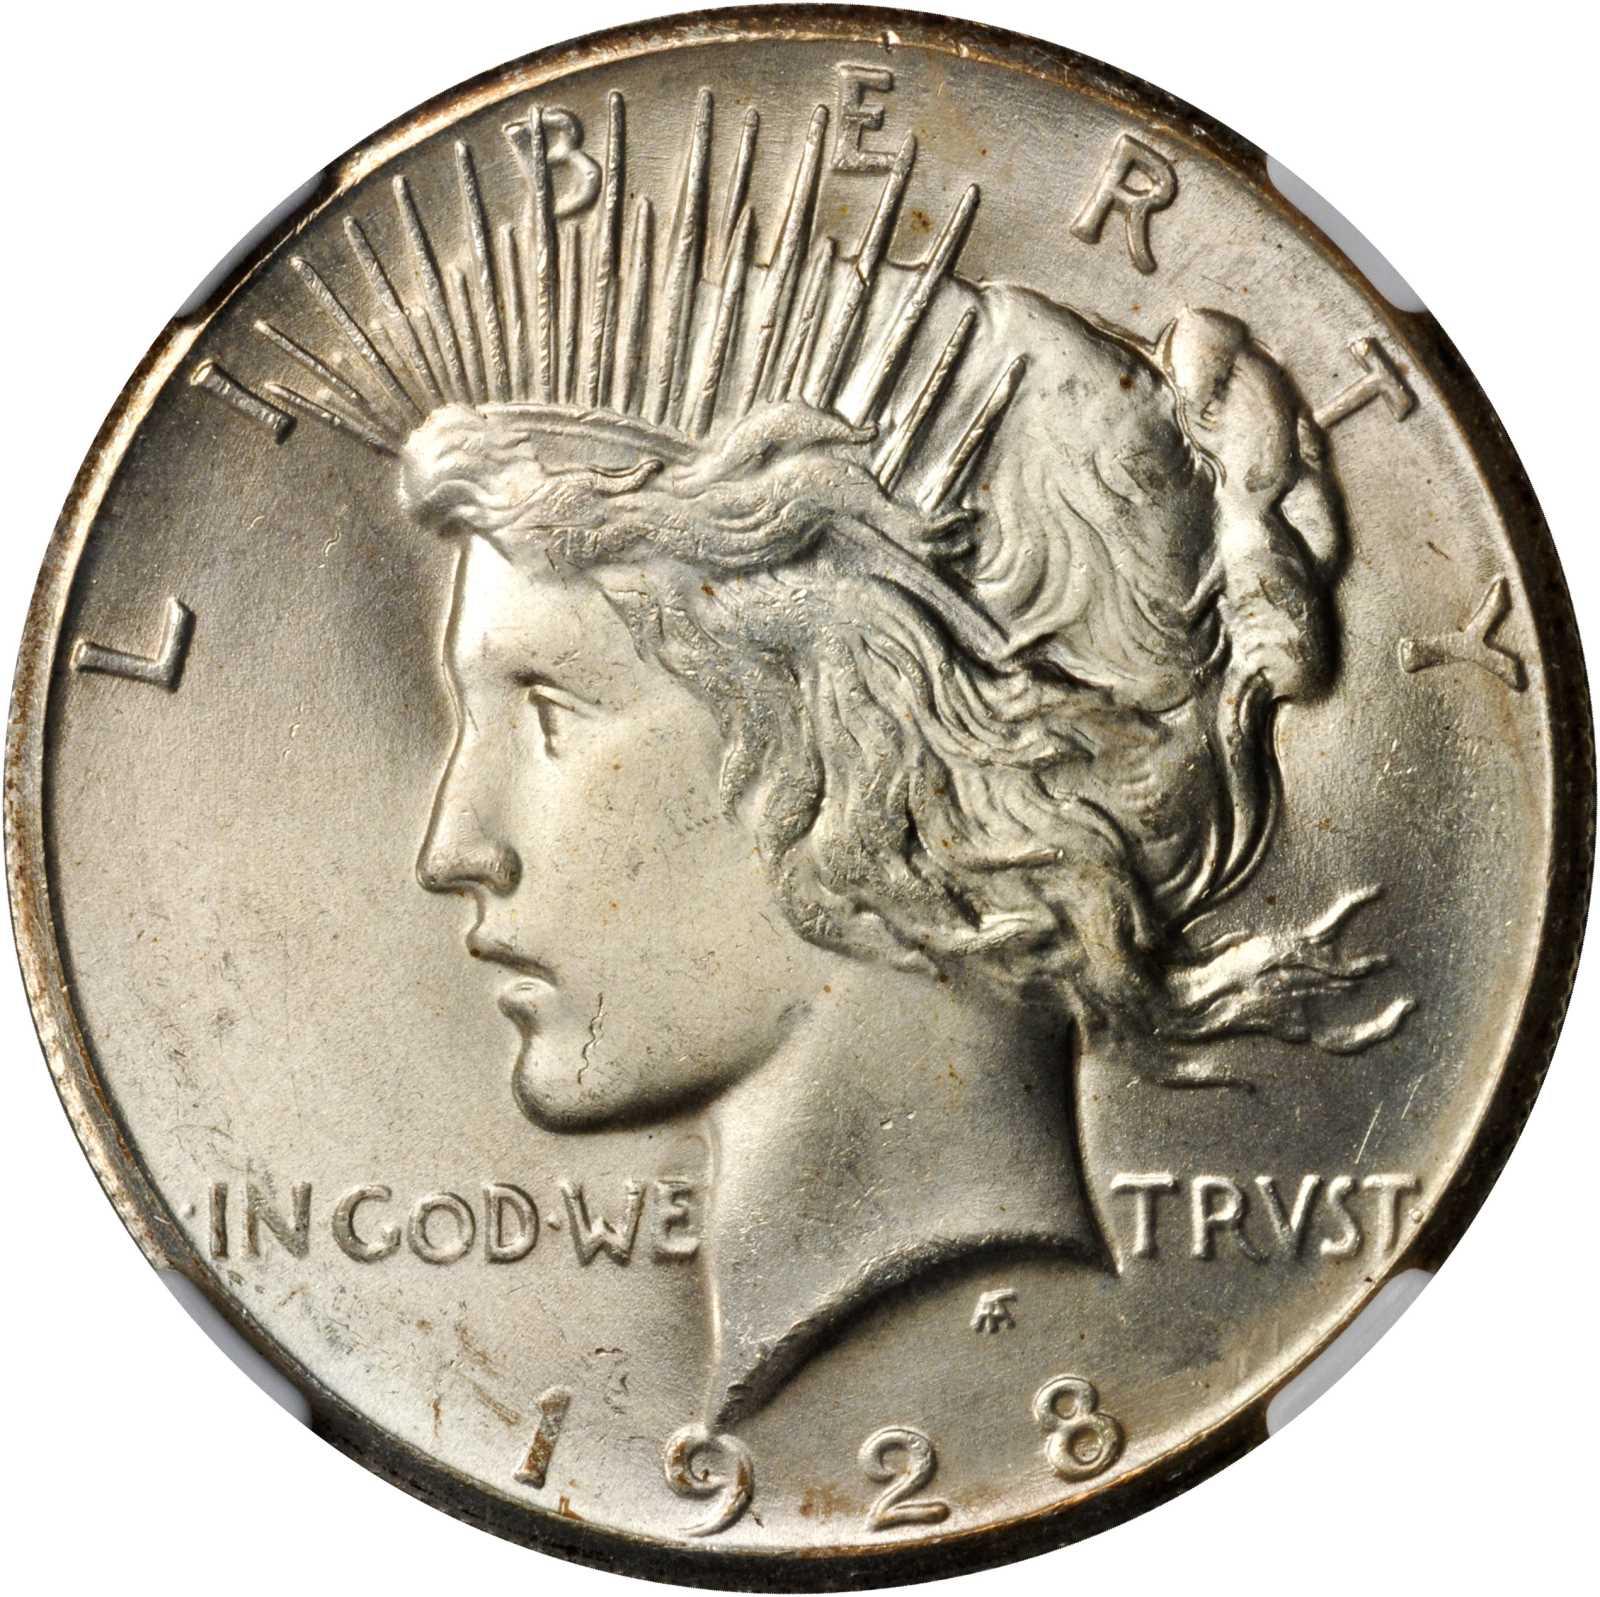 1928 silver dollar worth